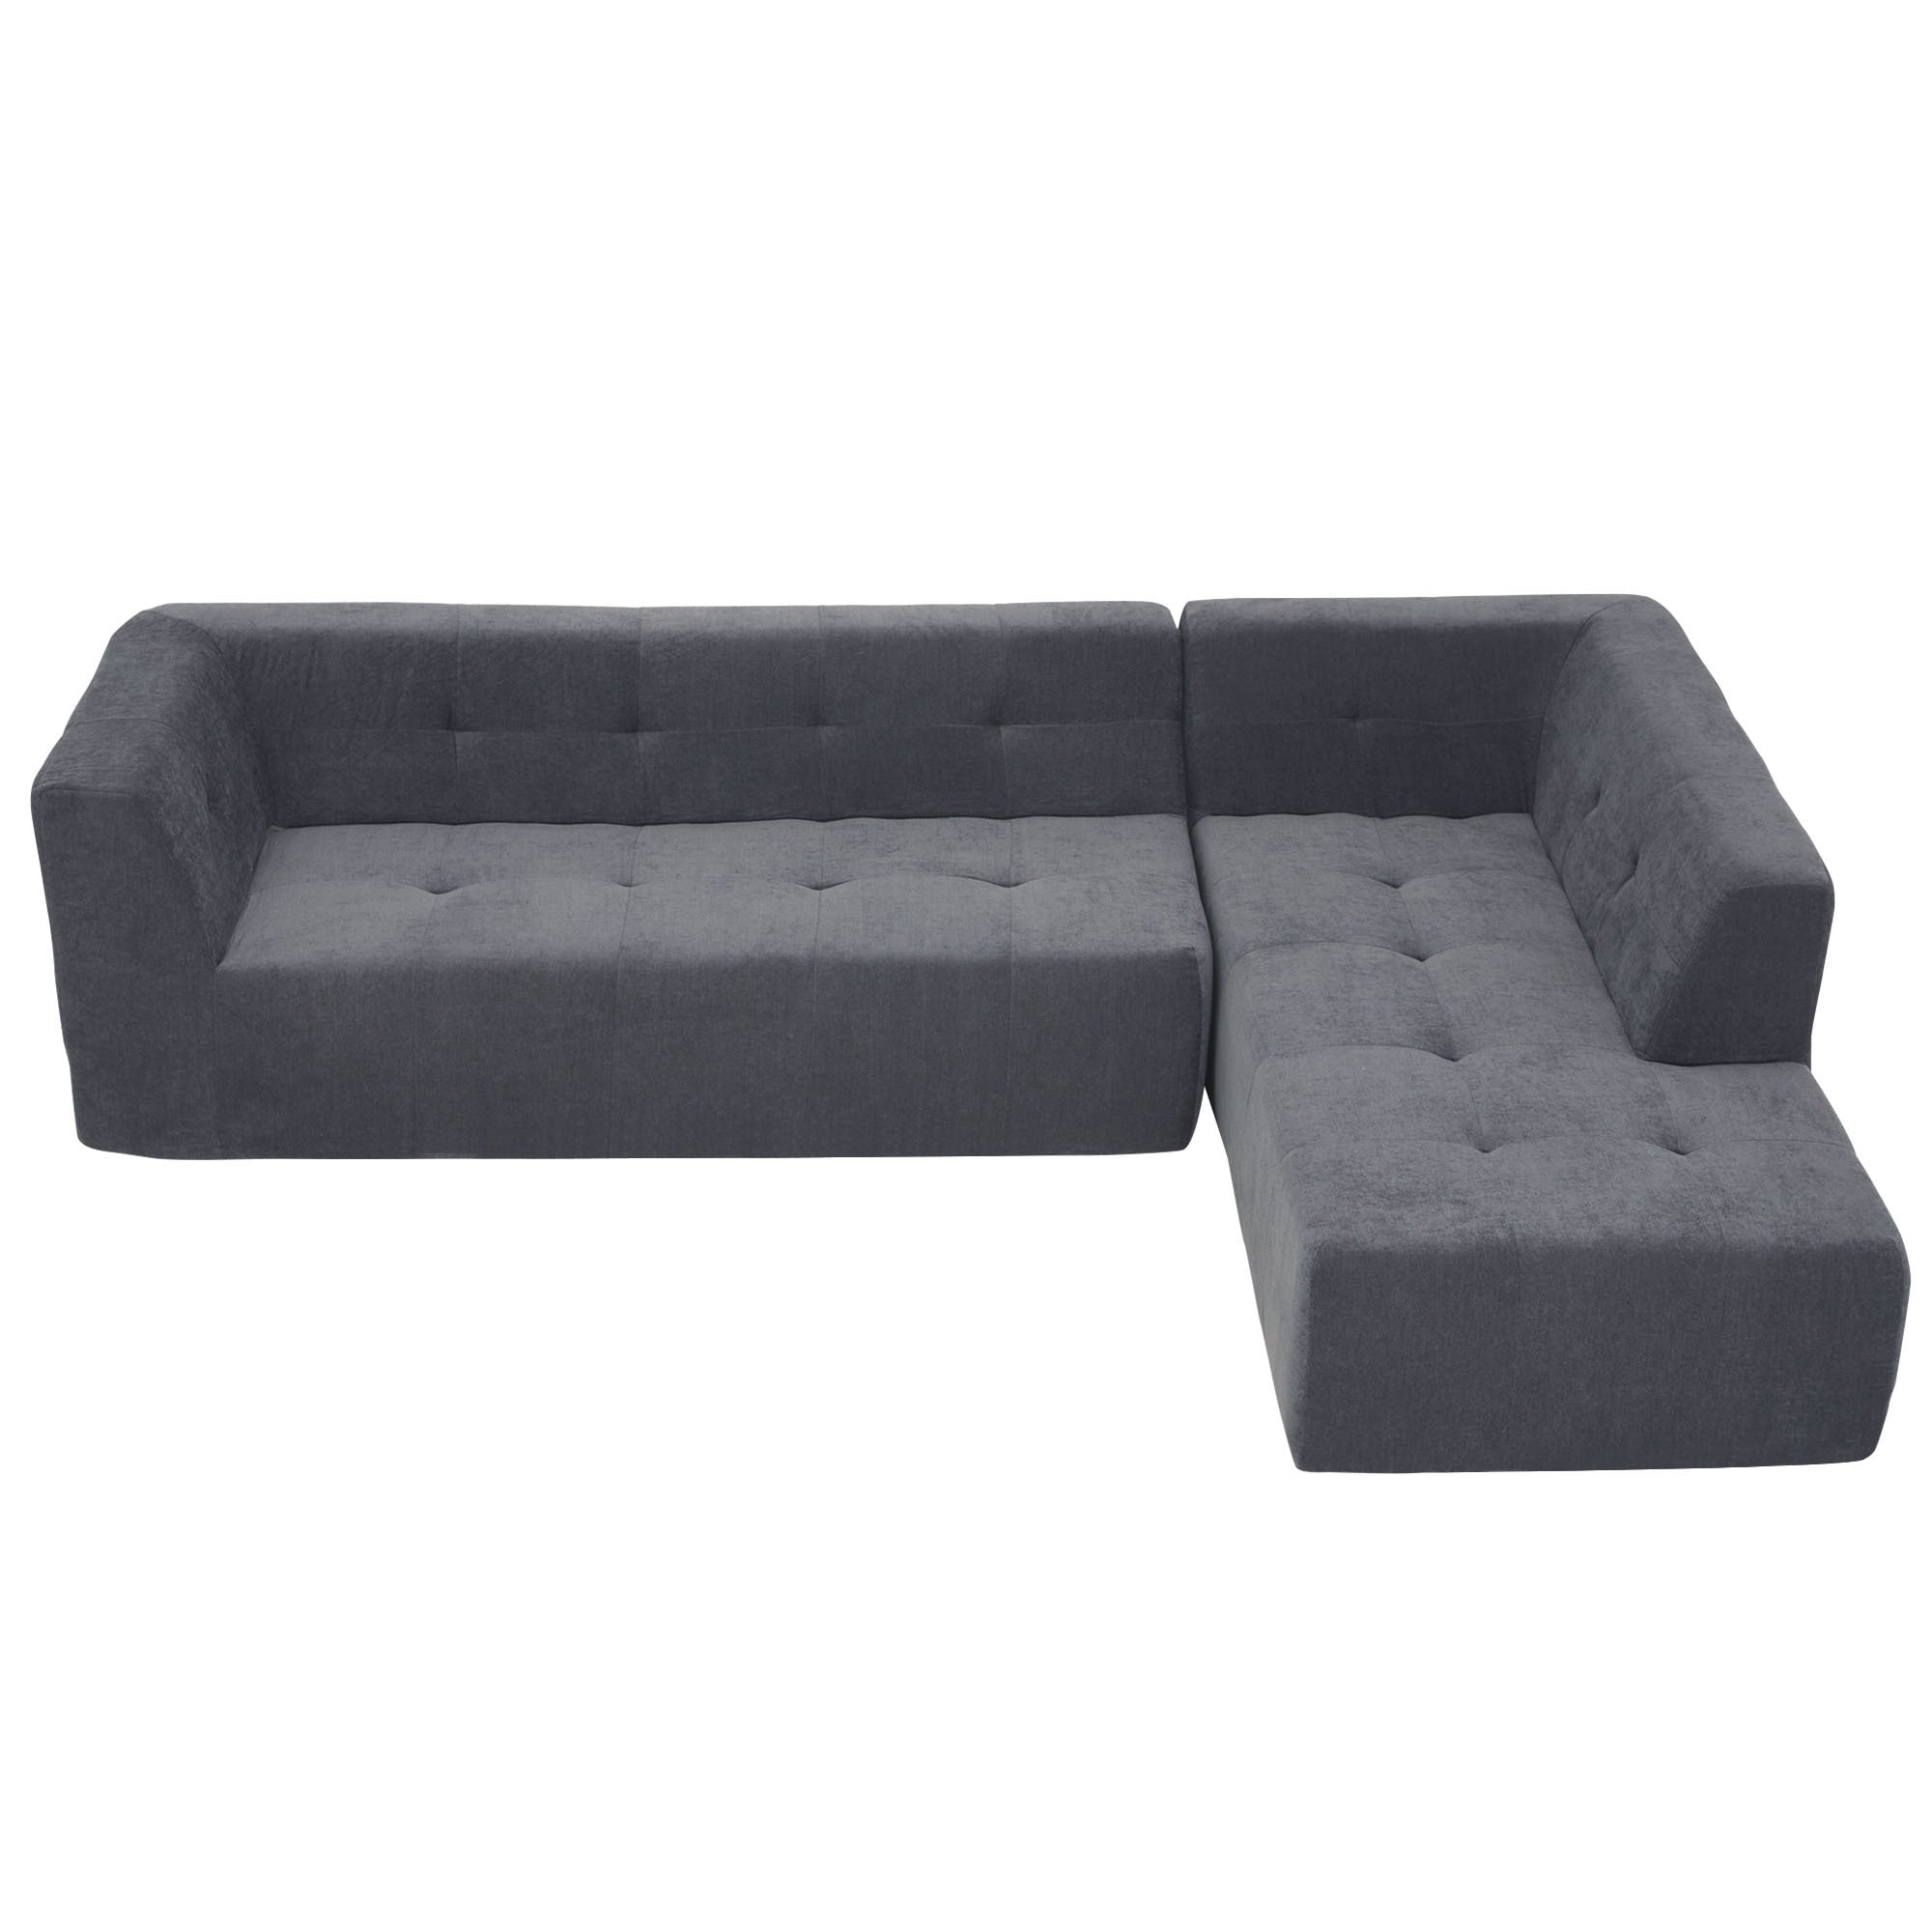 L-Shaped Chenille Modular Sectional Sofa - Dark Grey Modern Design